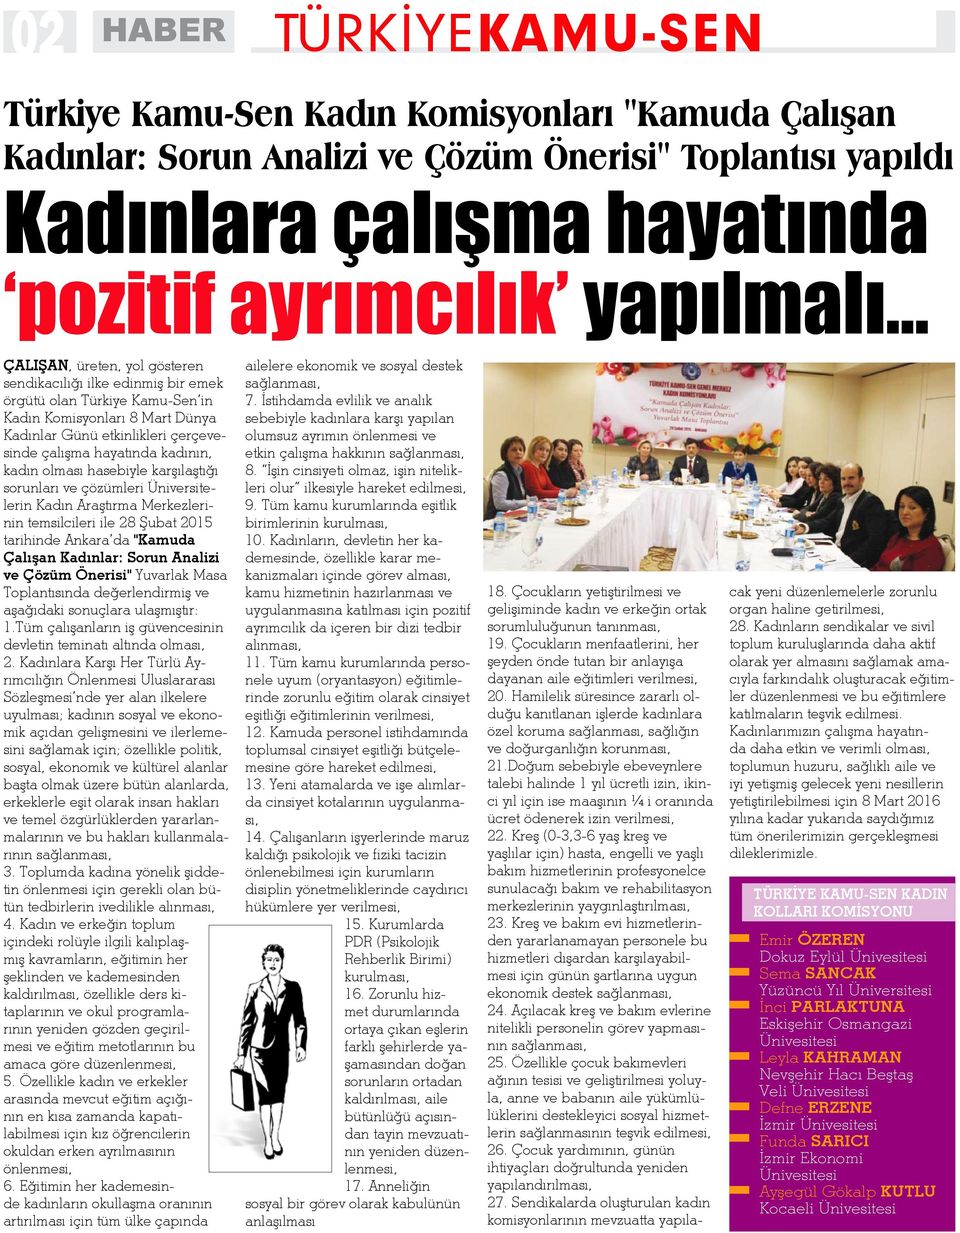 kadın olması hasebiyle karşılaştığı sorunları ve çözümleri Üniversitelerin Kadın Araştırma Merkezlerinin temsilcileri ile 28 Şubat 2015 tarihinde Ankara da "Kamuda Çalışan Kadınlar: Sorun Analizi ve